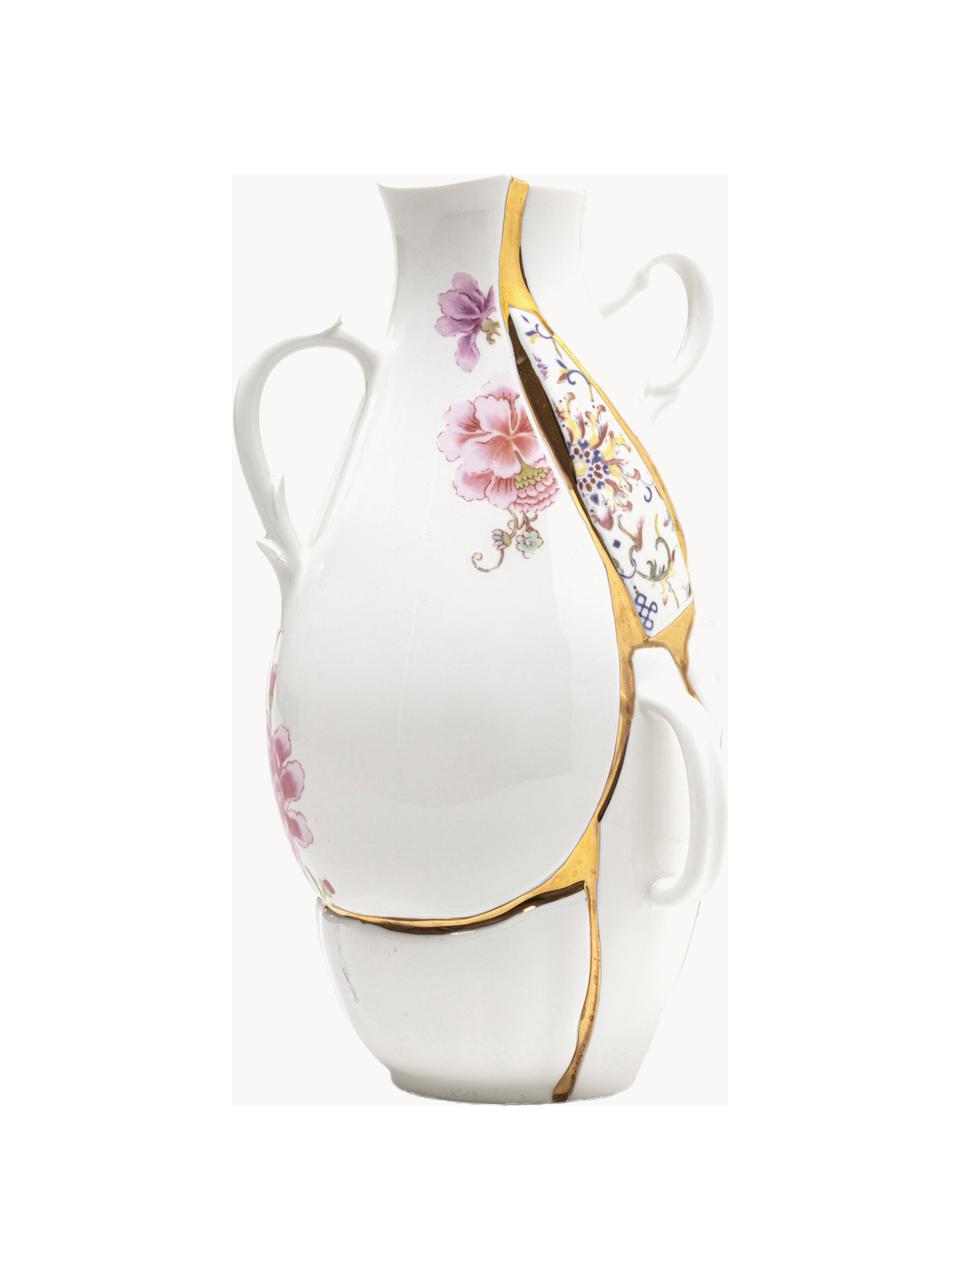 Vase Kintsugi aus Fine Bone China, H 32 cm, Vase: FIne Bone China, Dekor: 24-Karat Gold, Weiss glänzend, Mehrfarbig, B 19 x H 32 cm